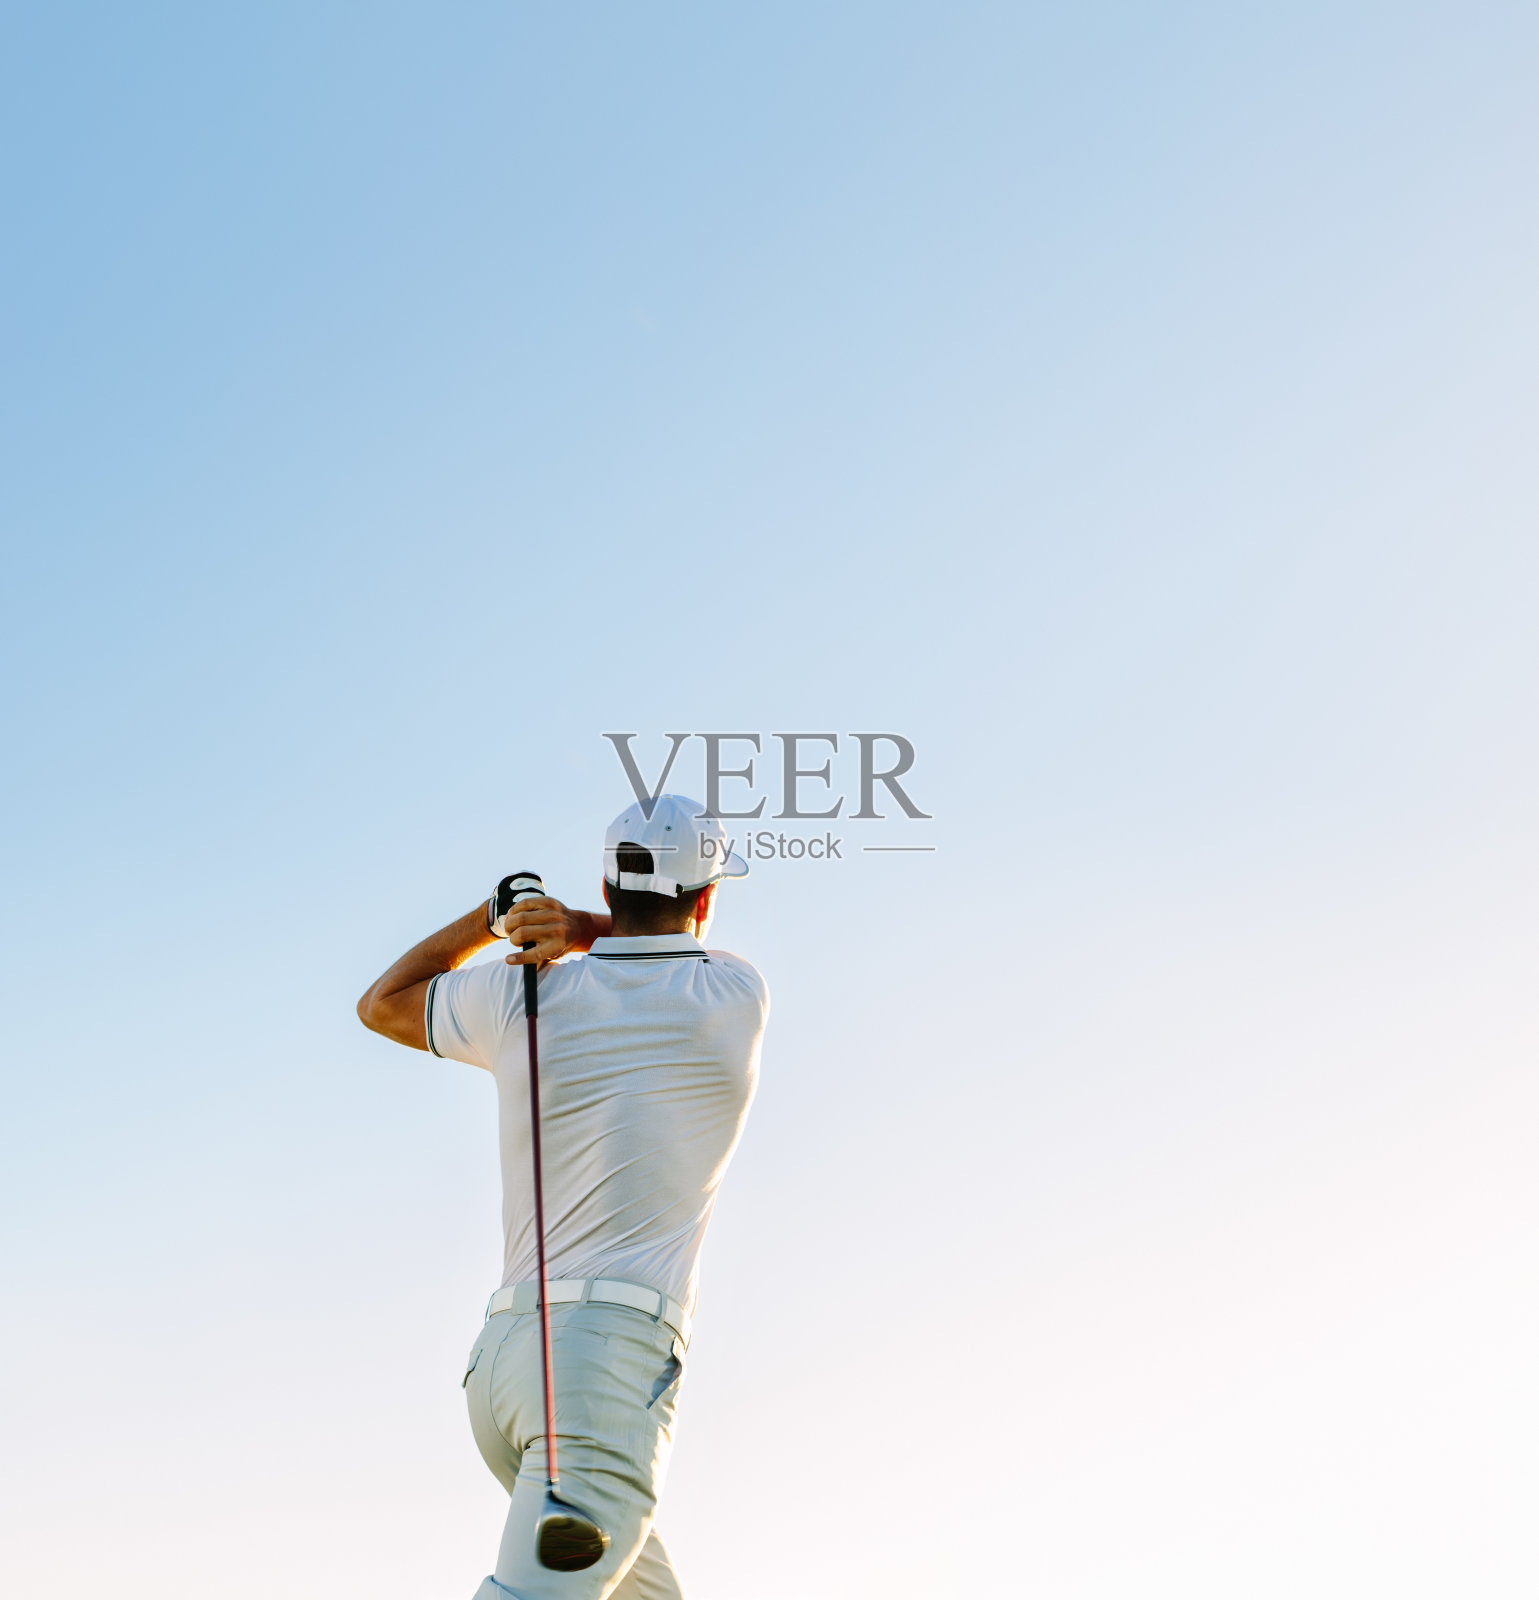 晴朗的天空下挥舞着高尔夫球杆的男子照片摄影图片